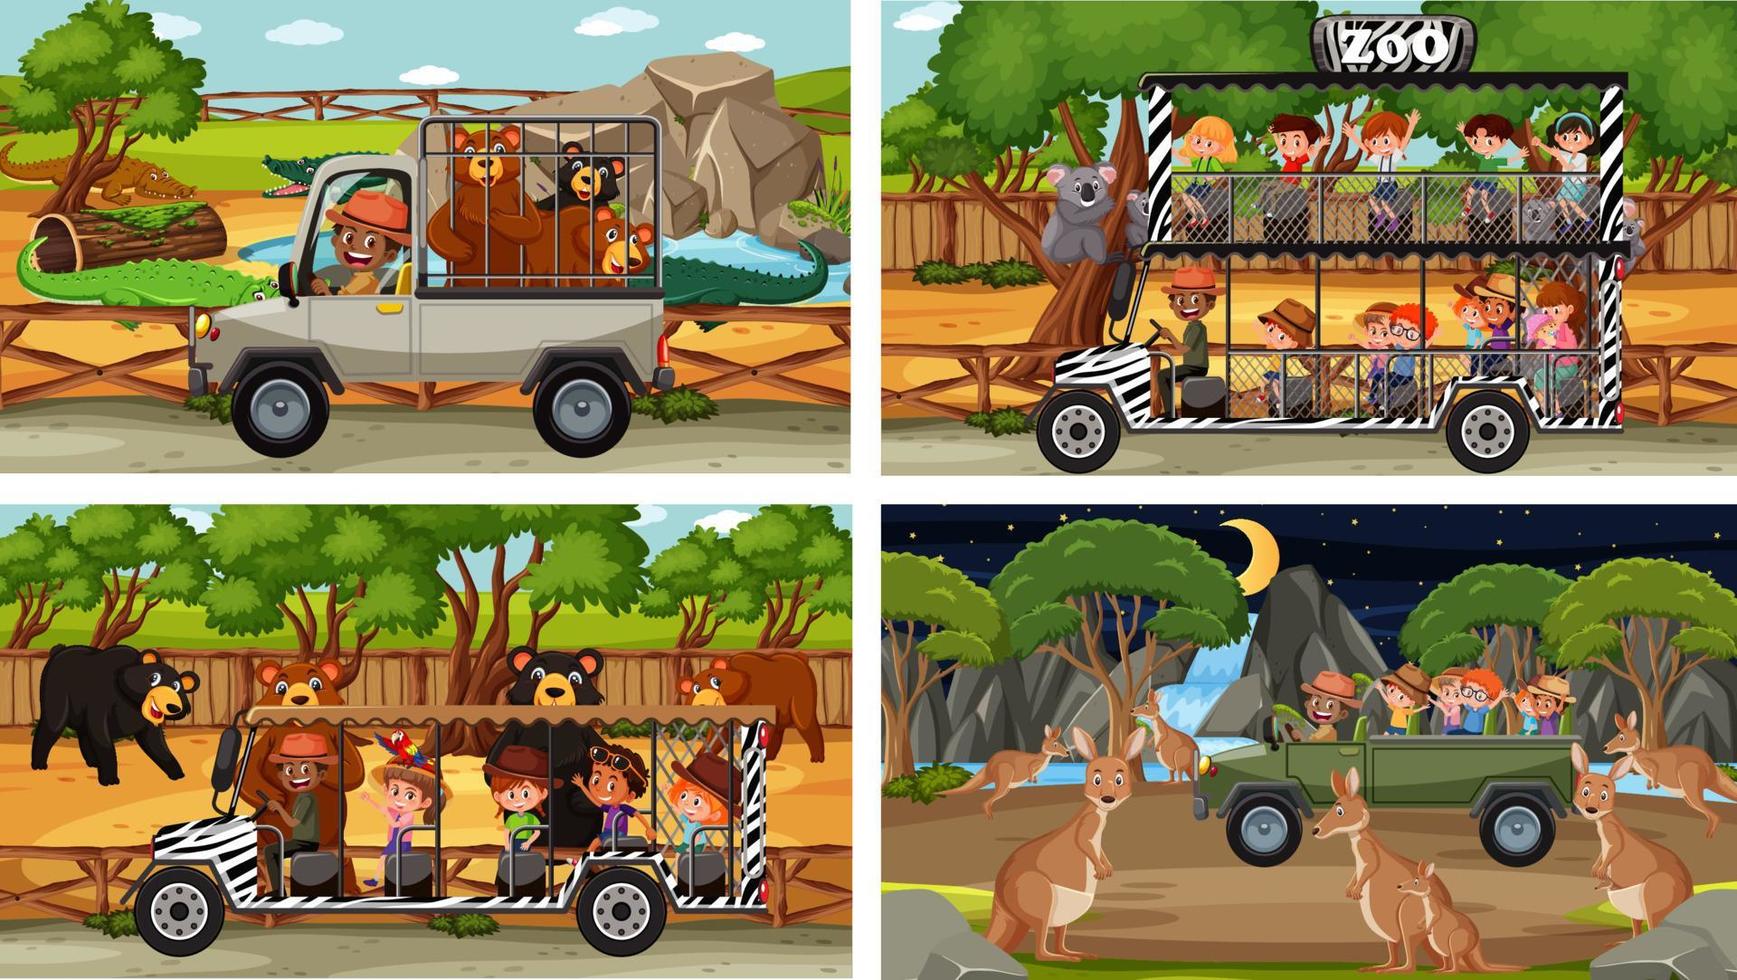 conjunto de diferentes cenas de safári com animais e personagens de desenhos animados infantis vetor